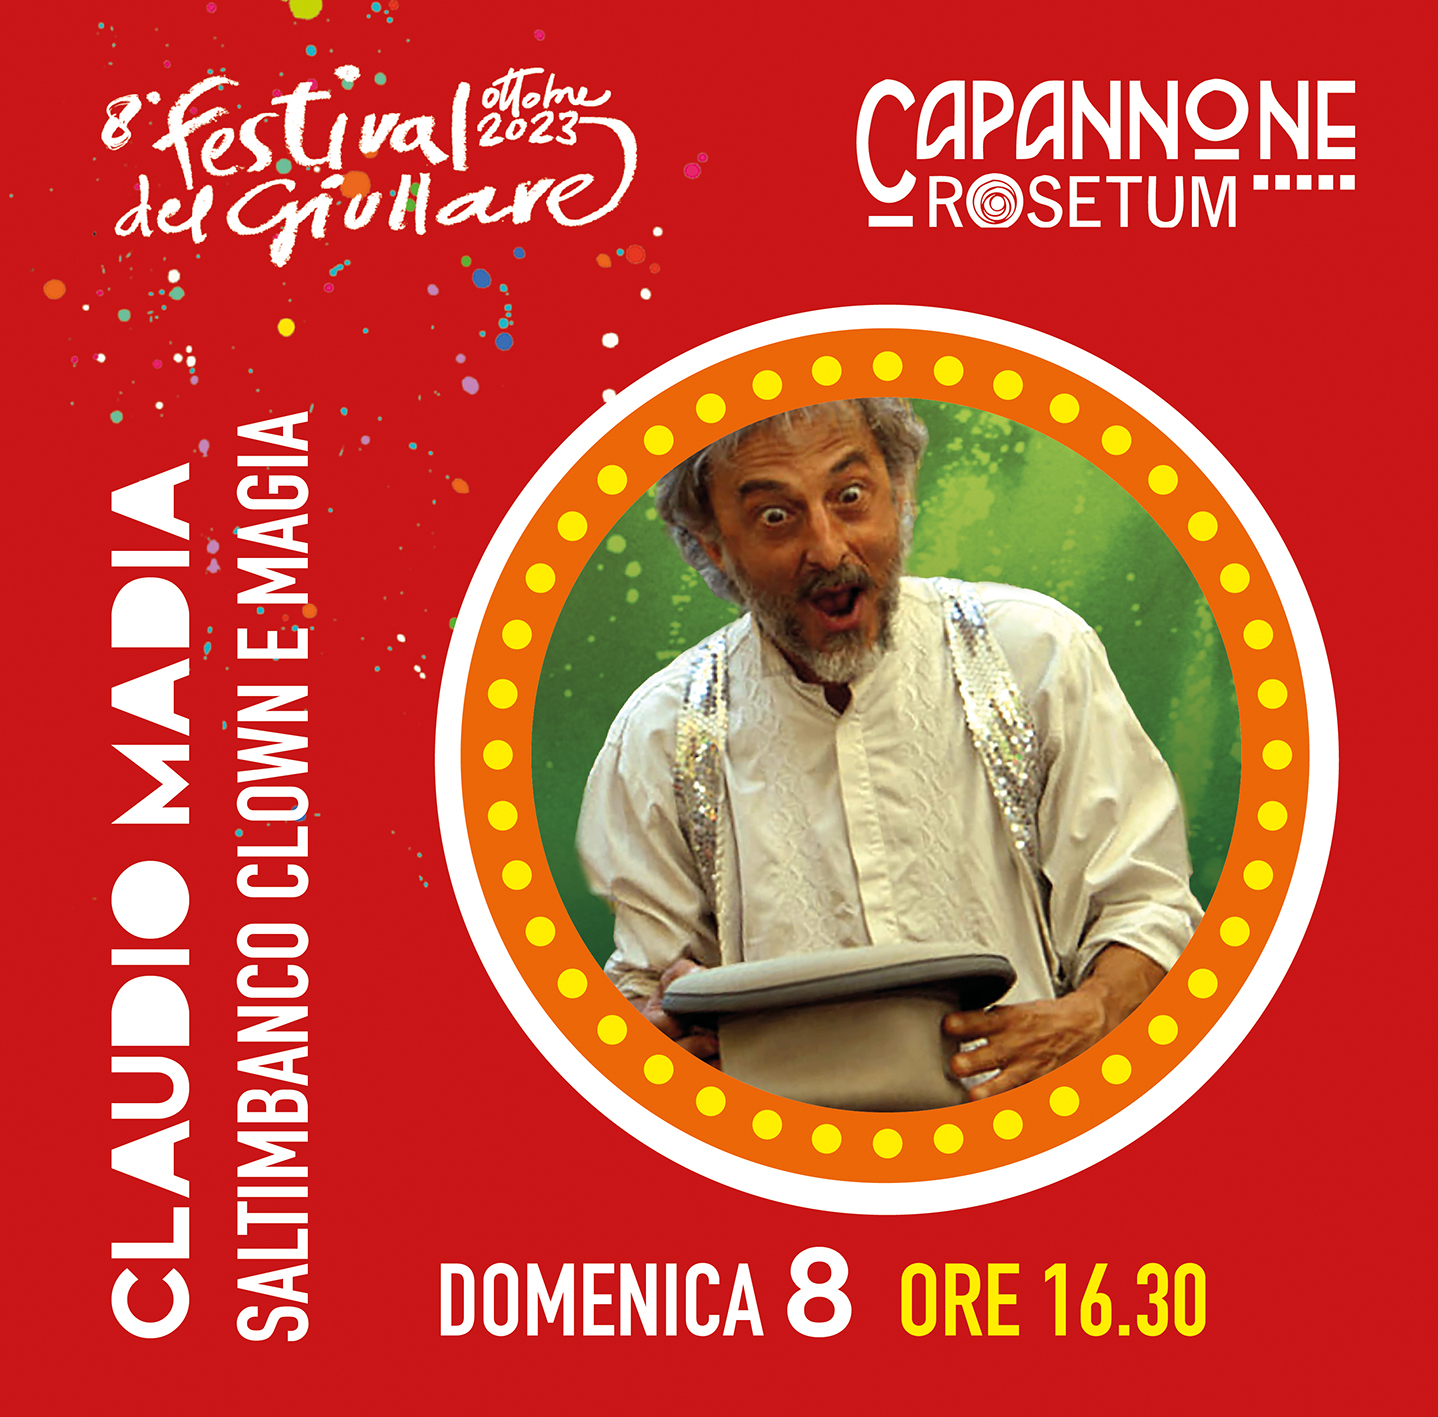 SALTIMBANCO CLOWN E MAGIA Claudio Madia - Festival del Giullare